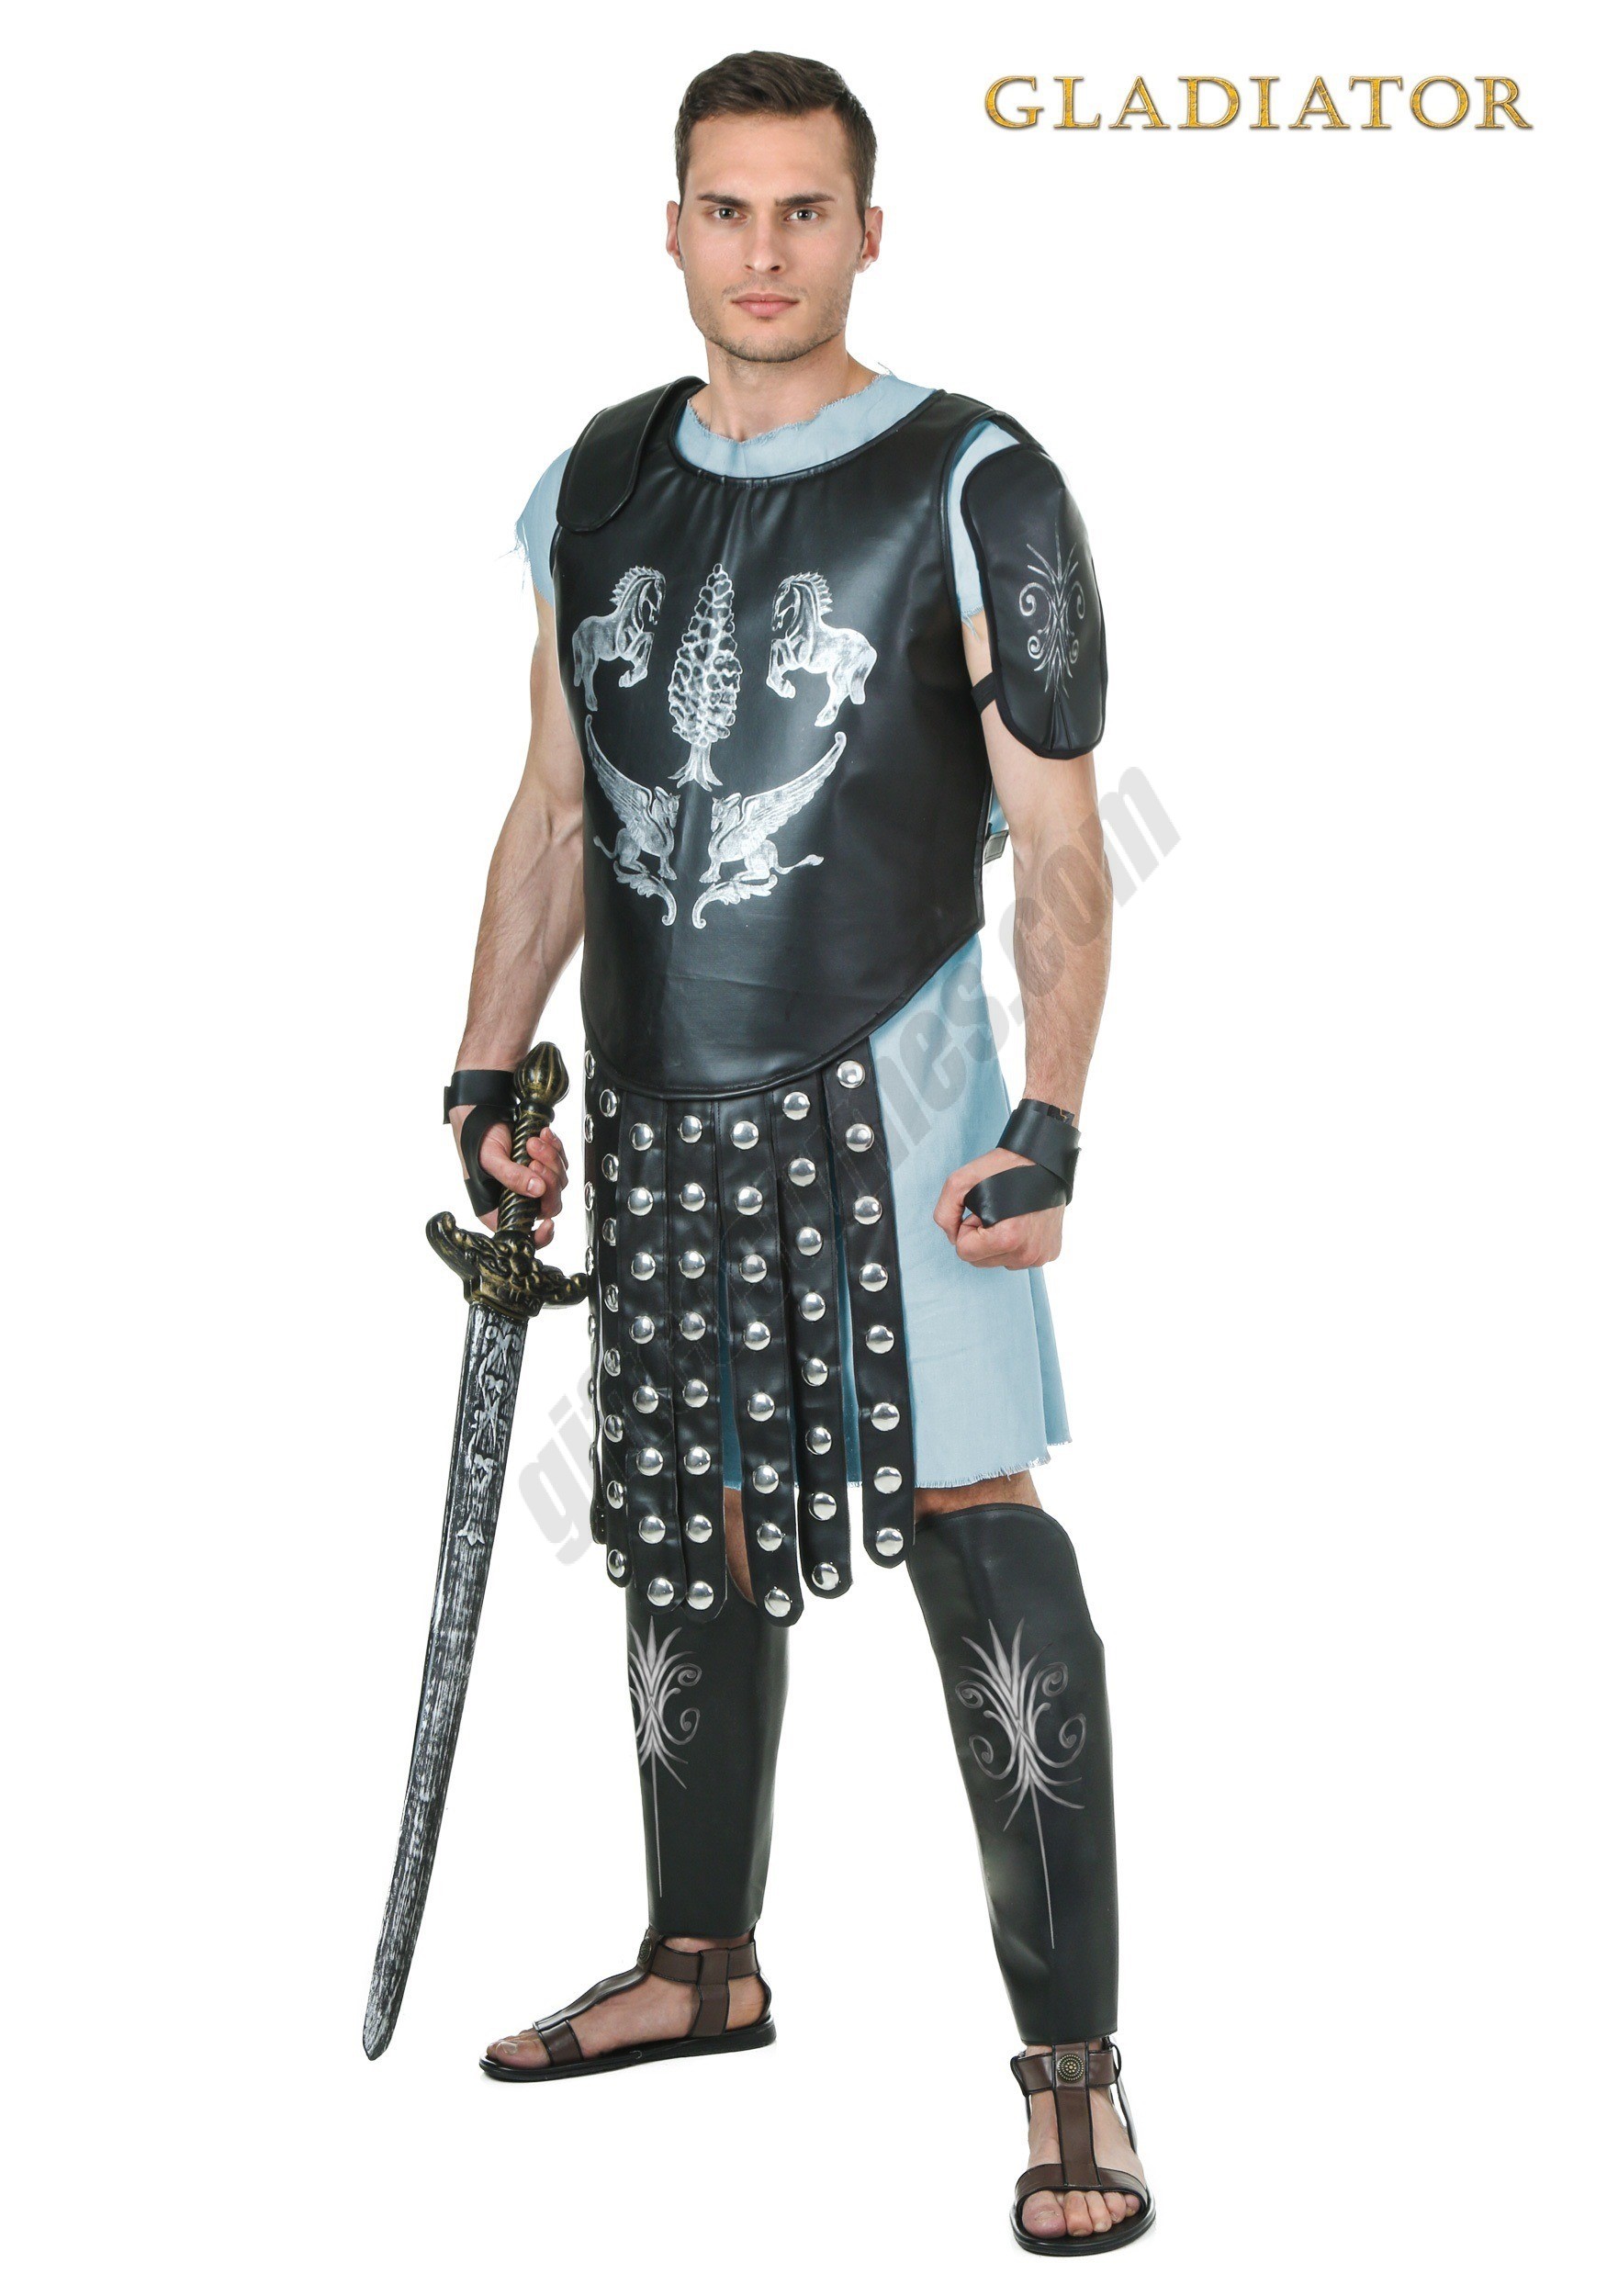 Men's Gladiator Maximus Arena Costume Promotions - Men's Gladiator Maximus Arena Costume Promotions